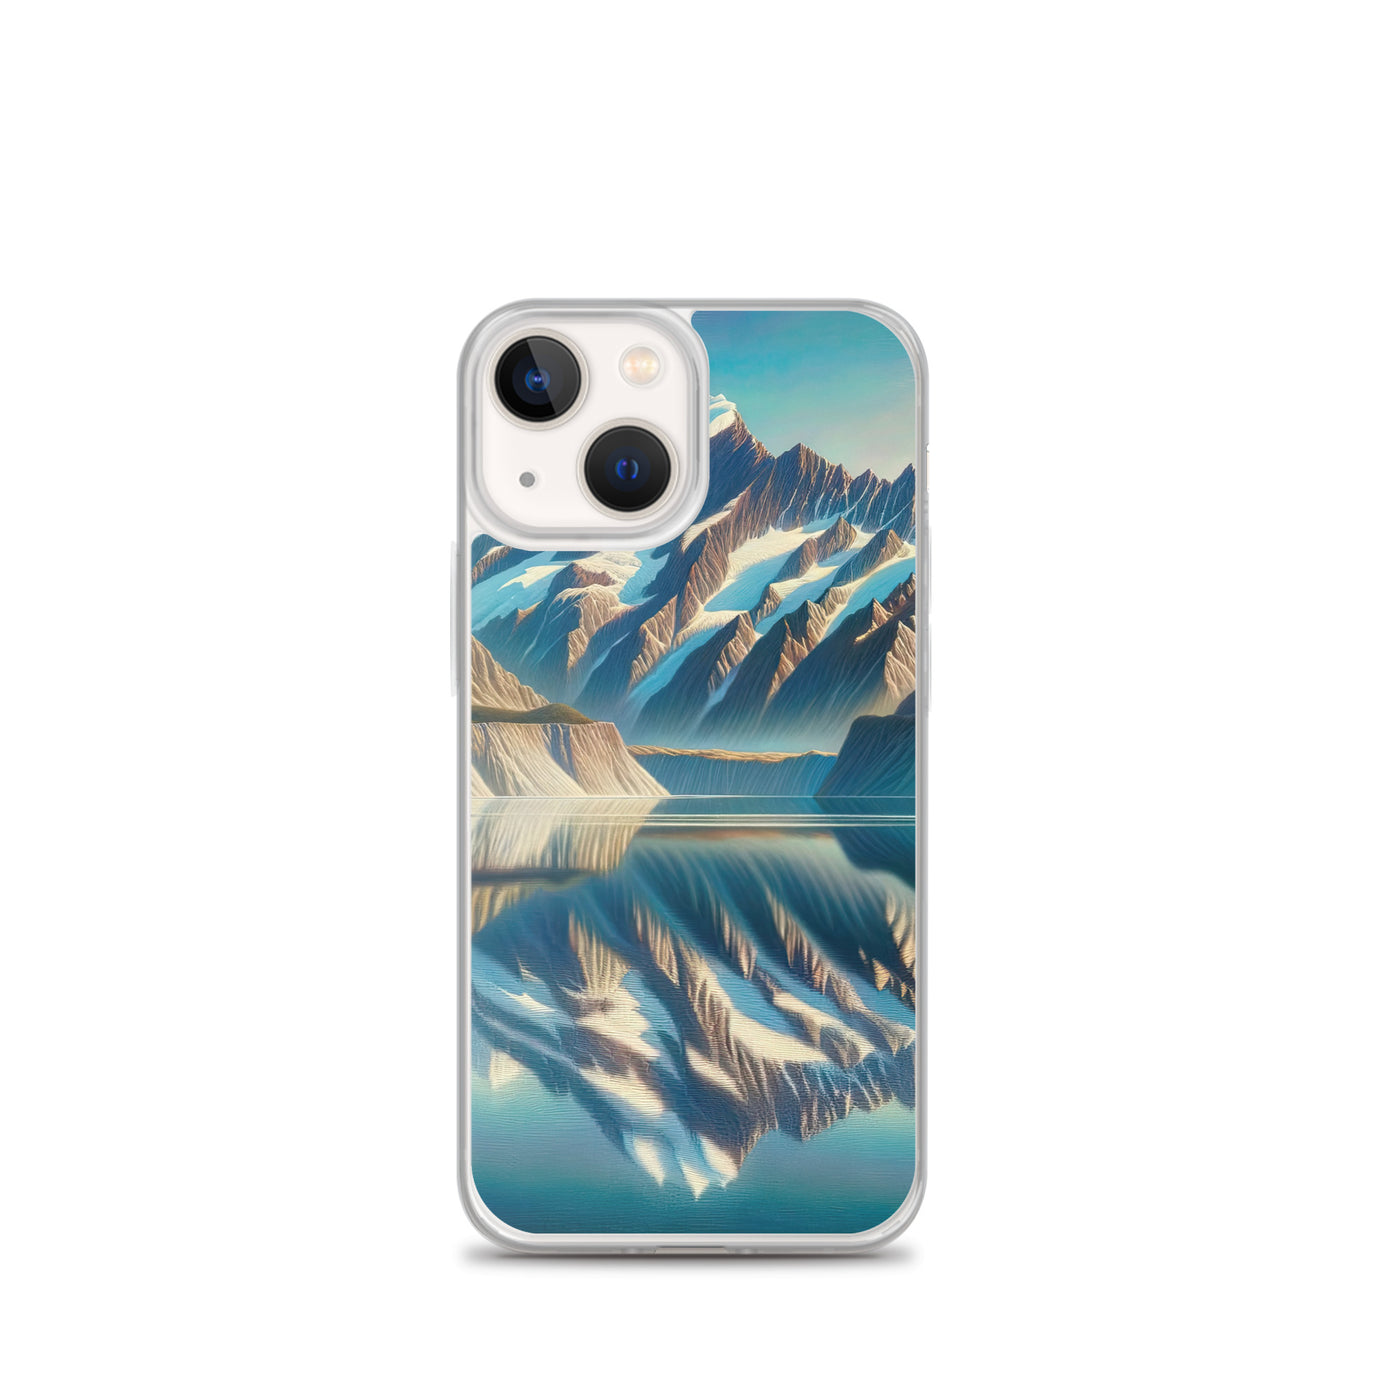 Ölgemälde eines unberührten Sees, der die Bergkette spiegelt - iPhone Schutzhülle (durchsichtig) berge xxx yyy zzz iPhone 13 mini